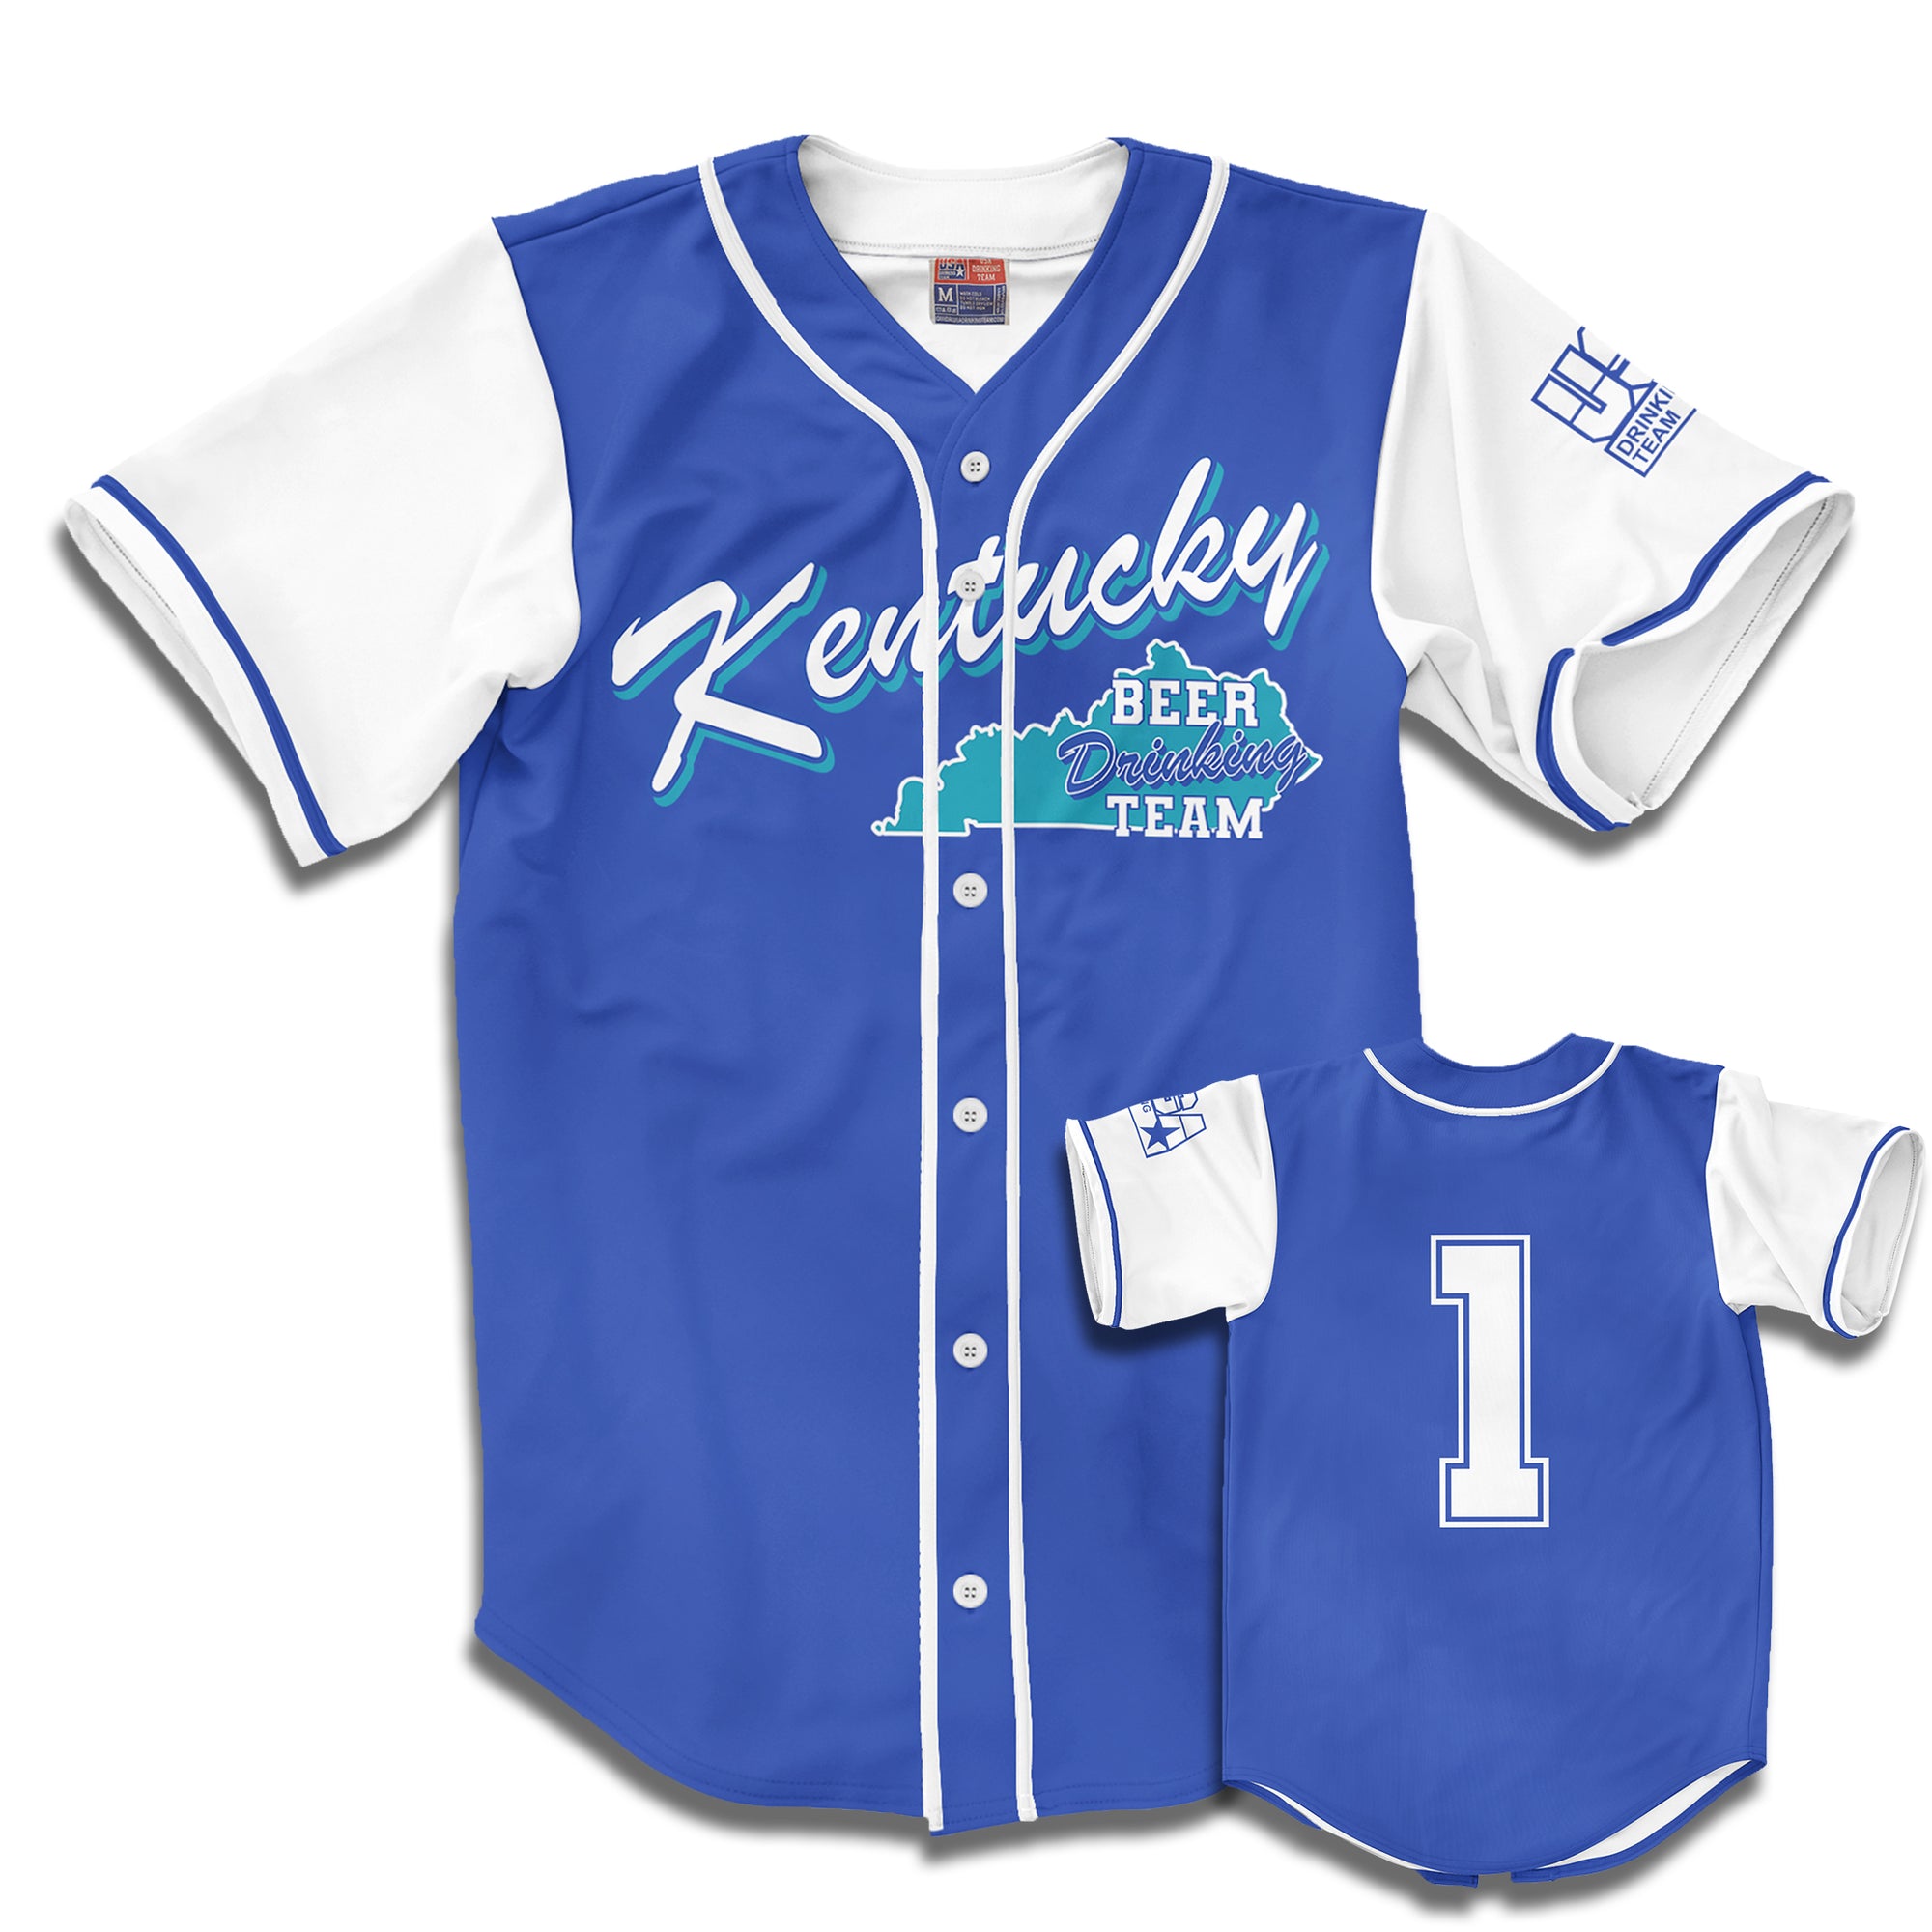 kentucky baseball jersey